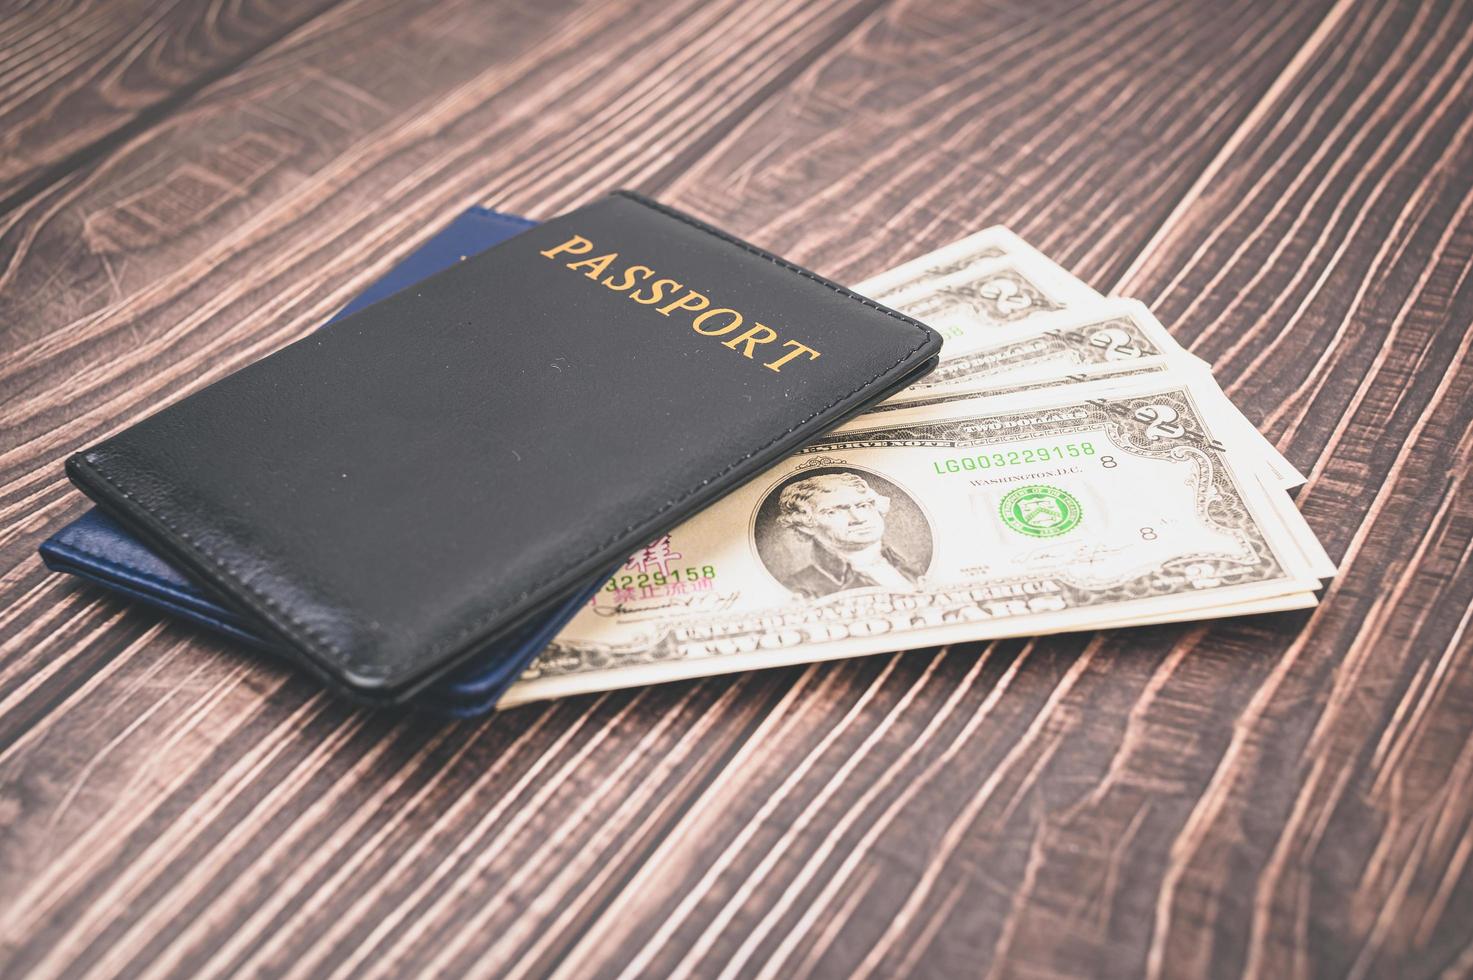 paspoort geld besparen voor reizen en zakendoen over de hele wereld. foto